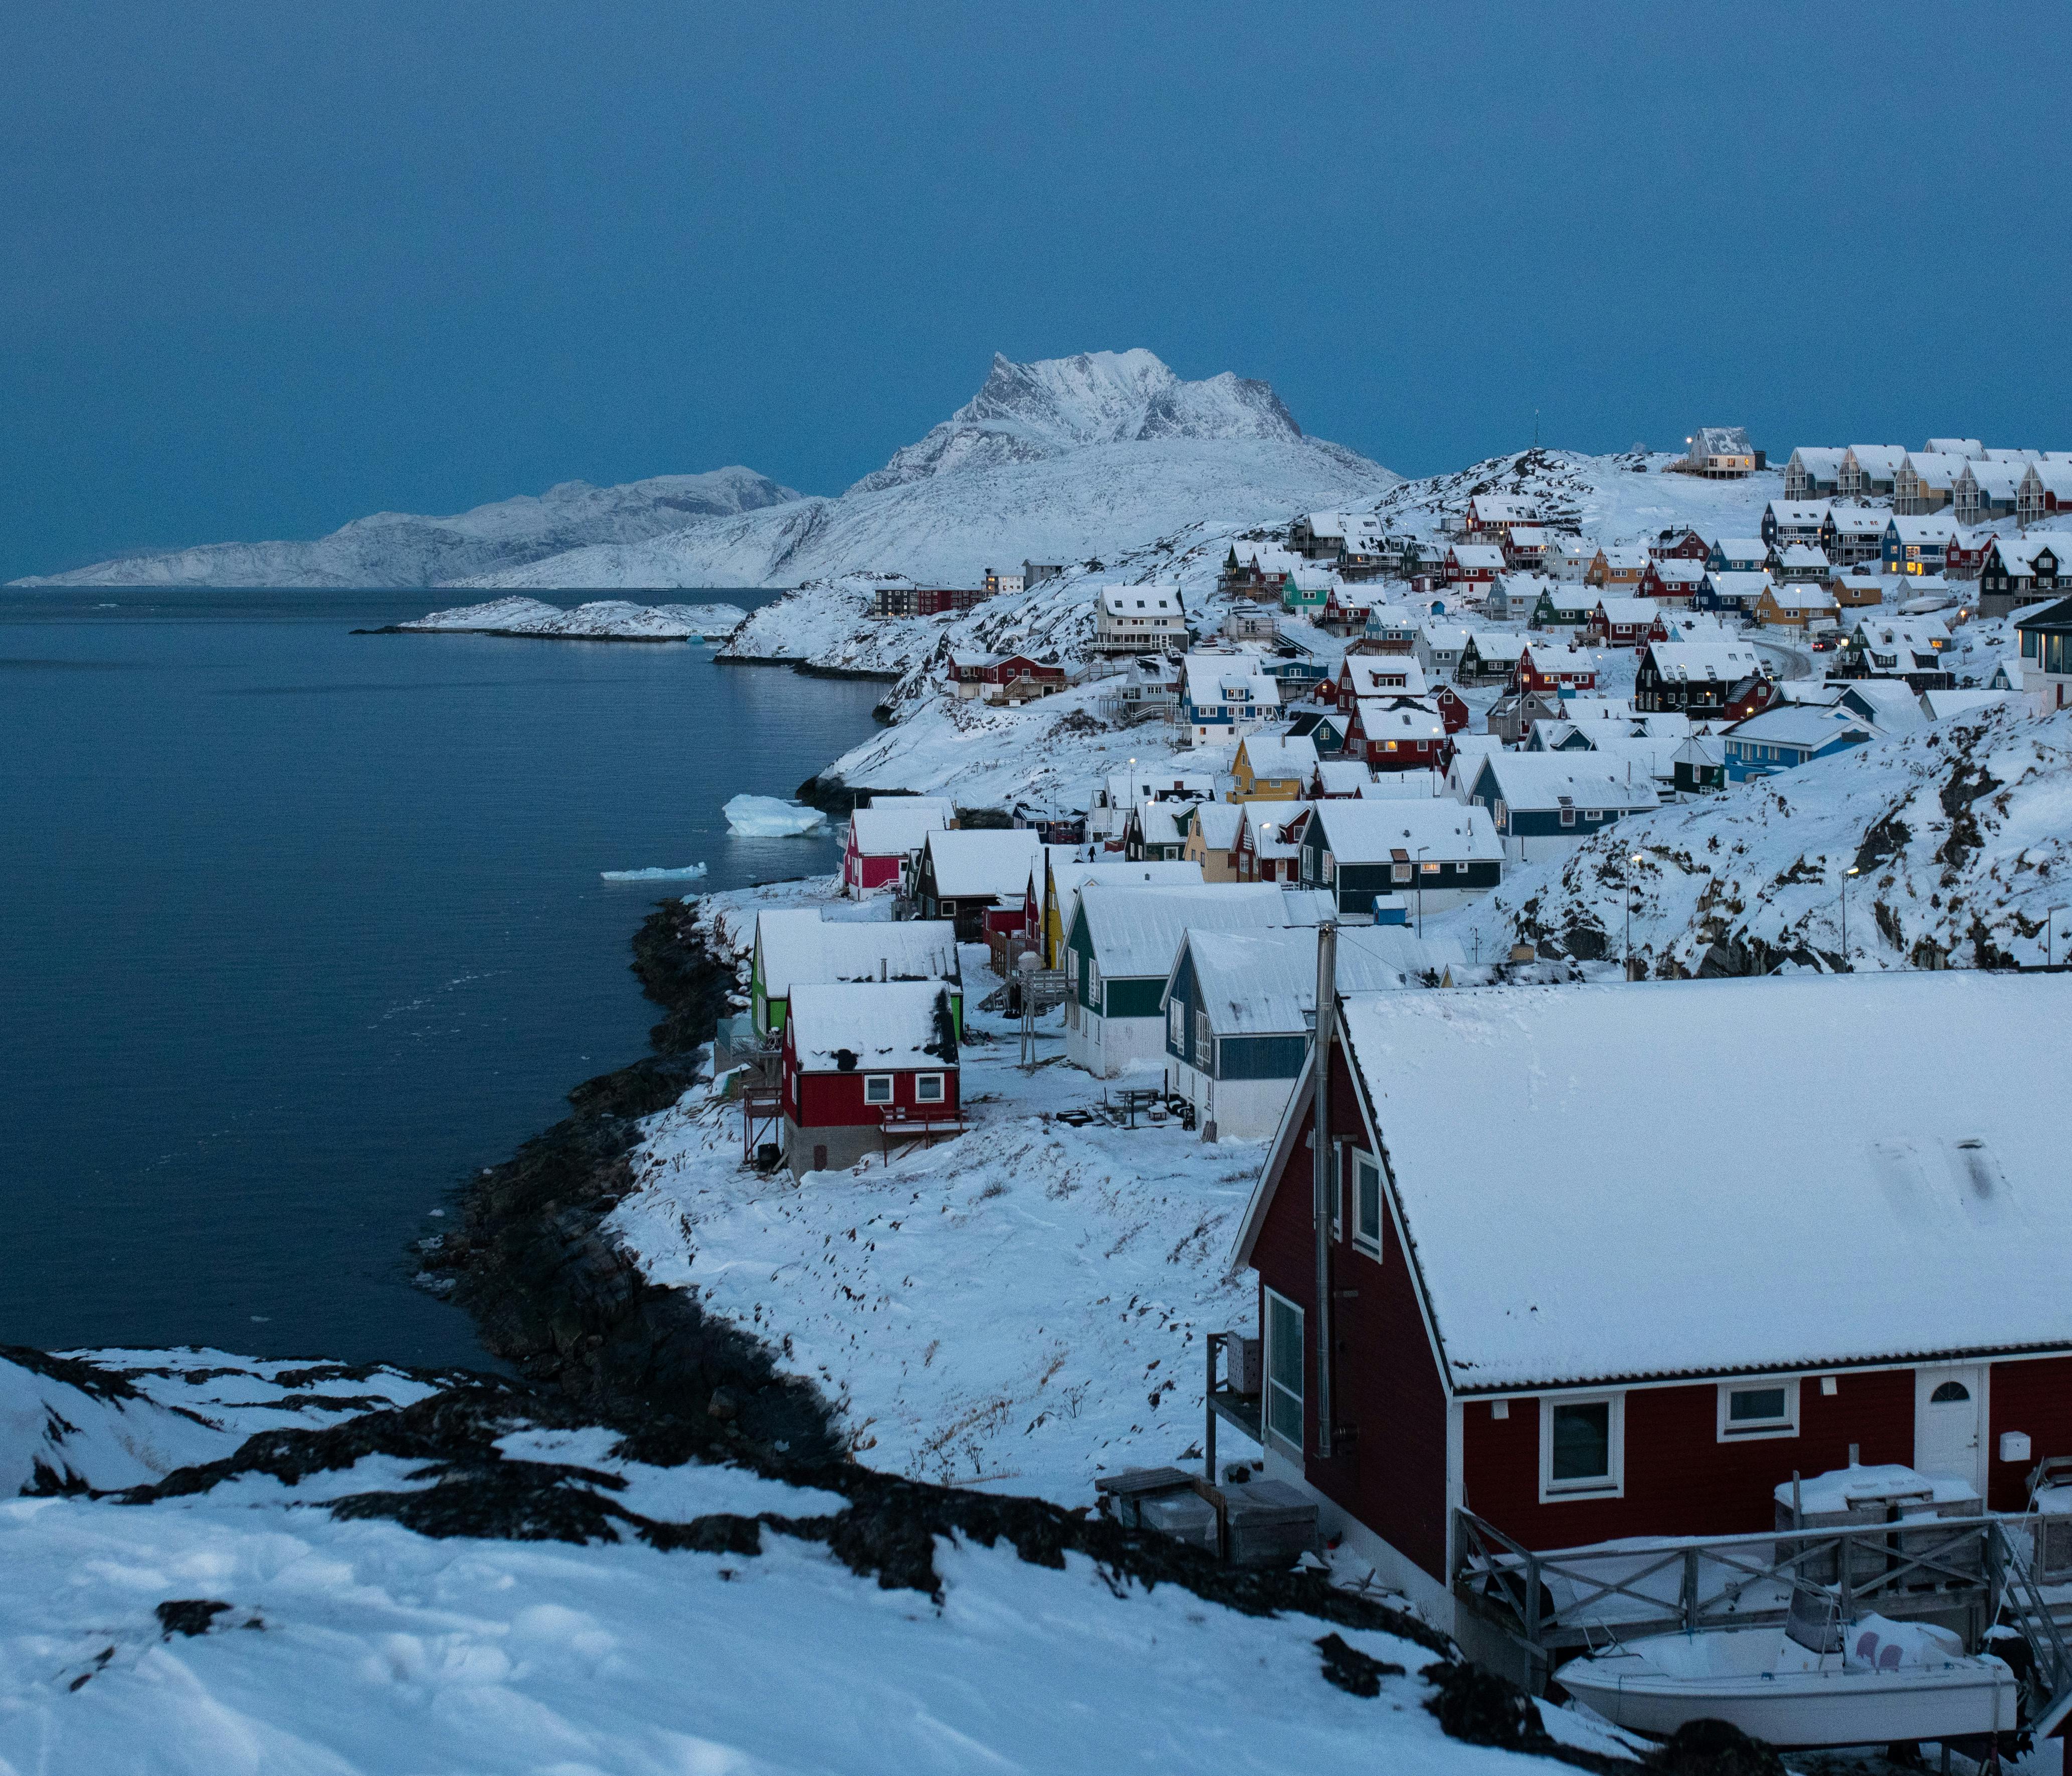 Nuuk, la capitale du Groenland, située sur le côté ouest, compte 19 000 habitants